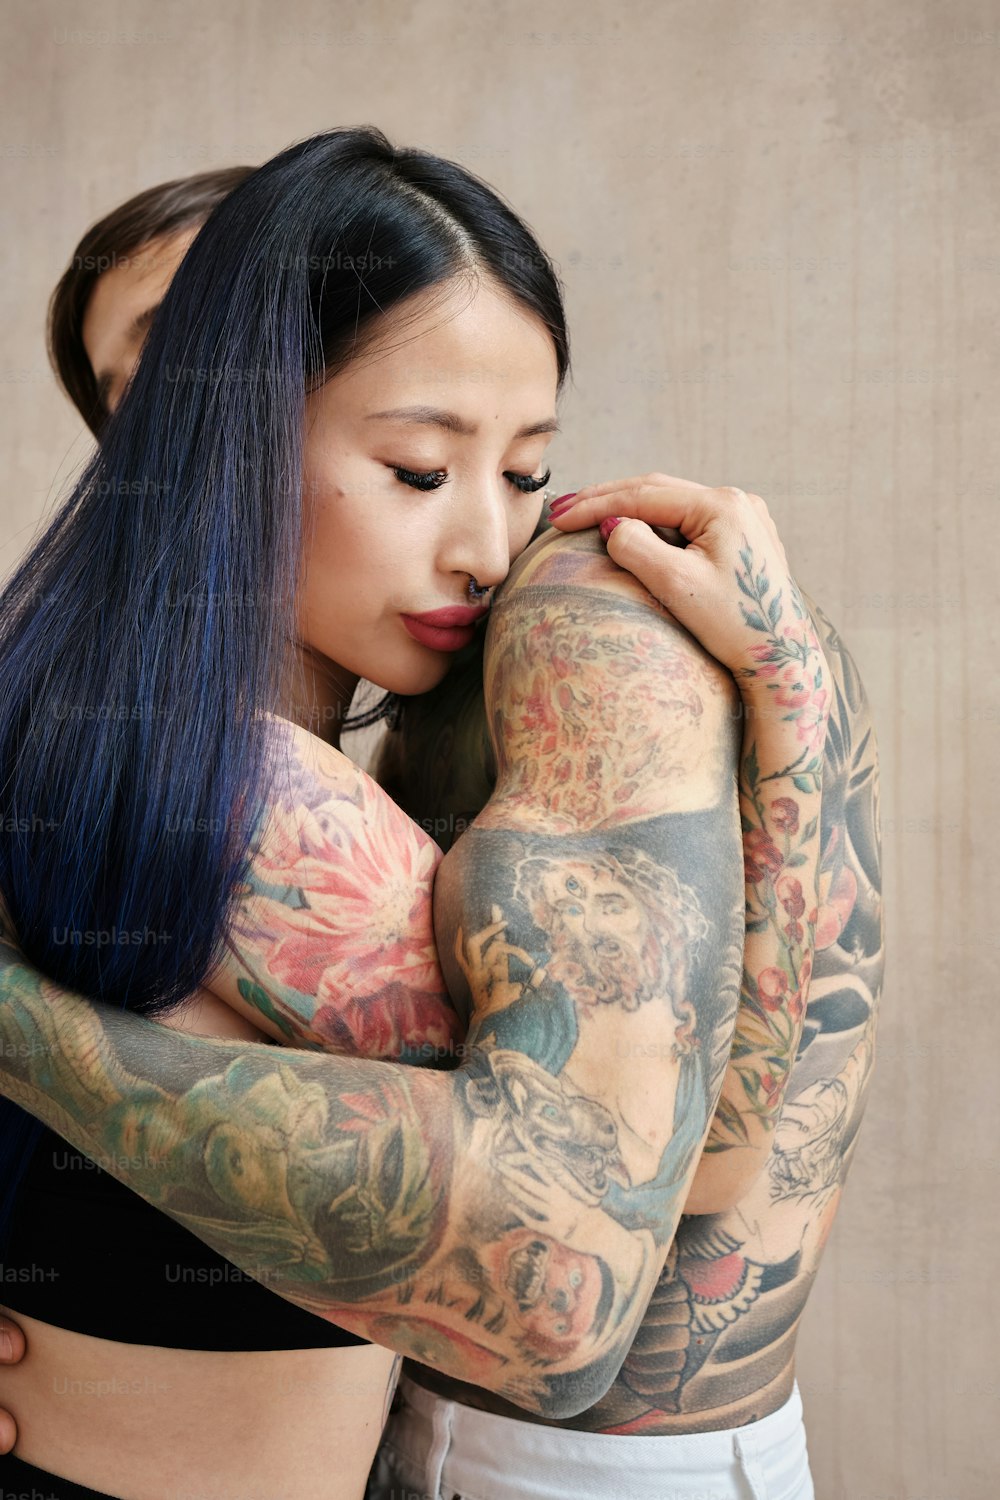 una donna con molti tatuaggi sul braccio